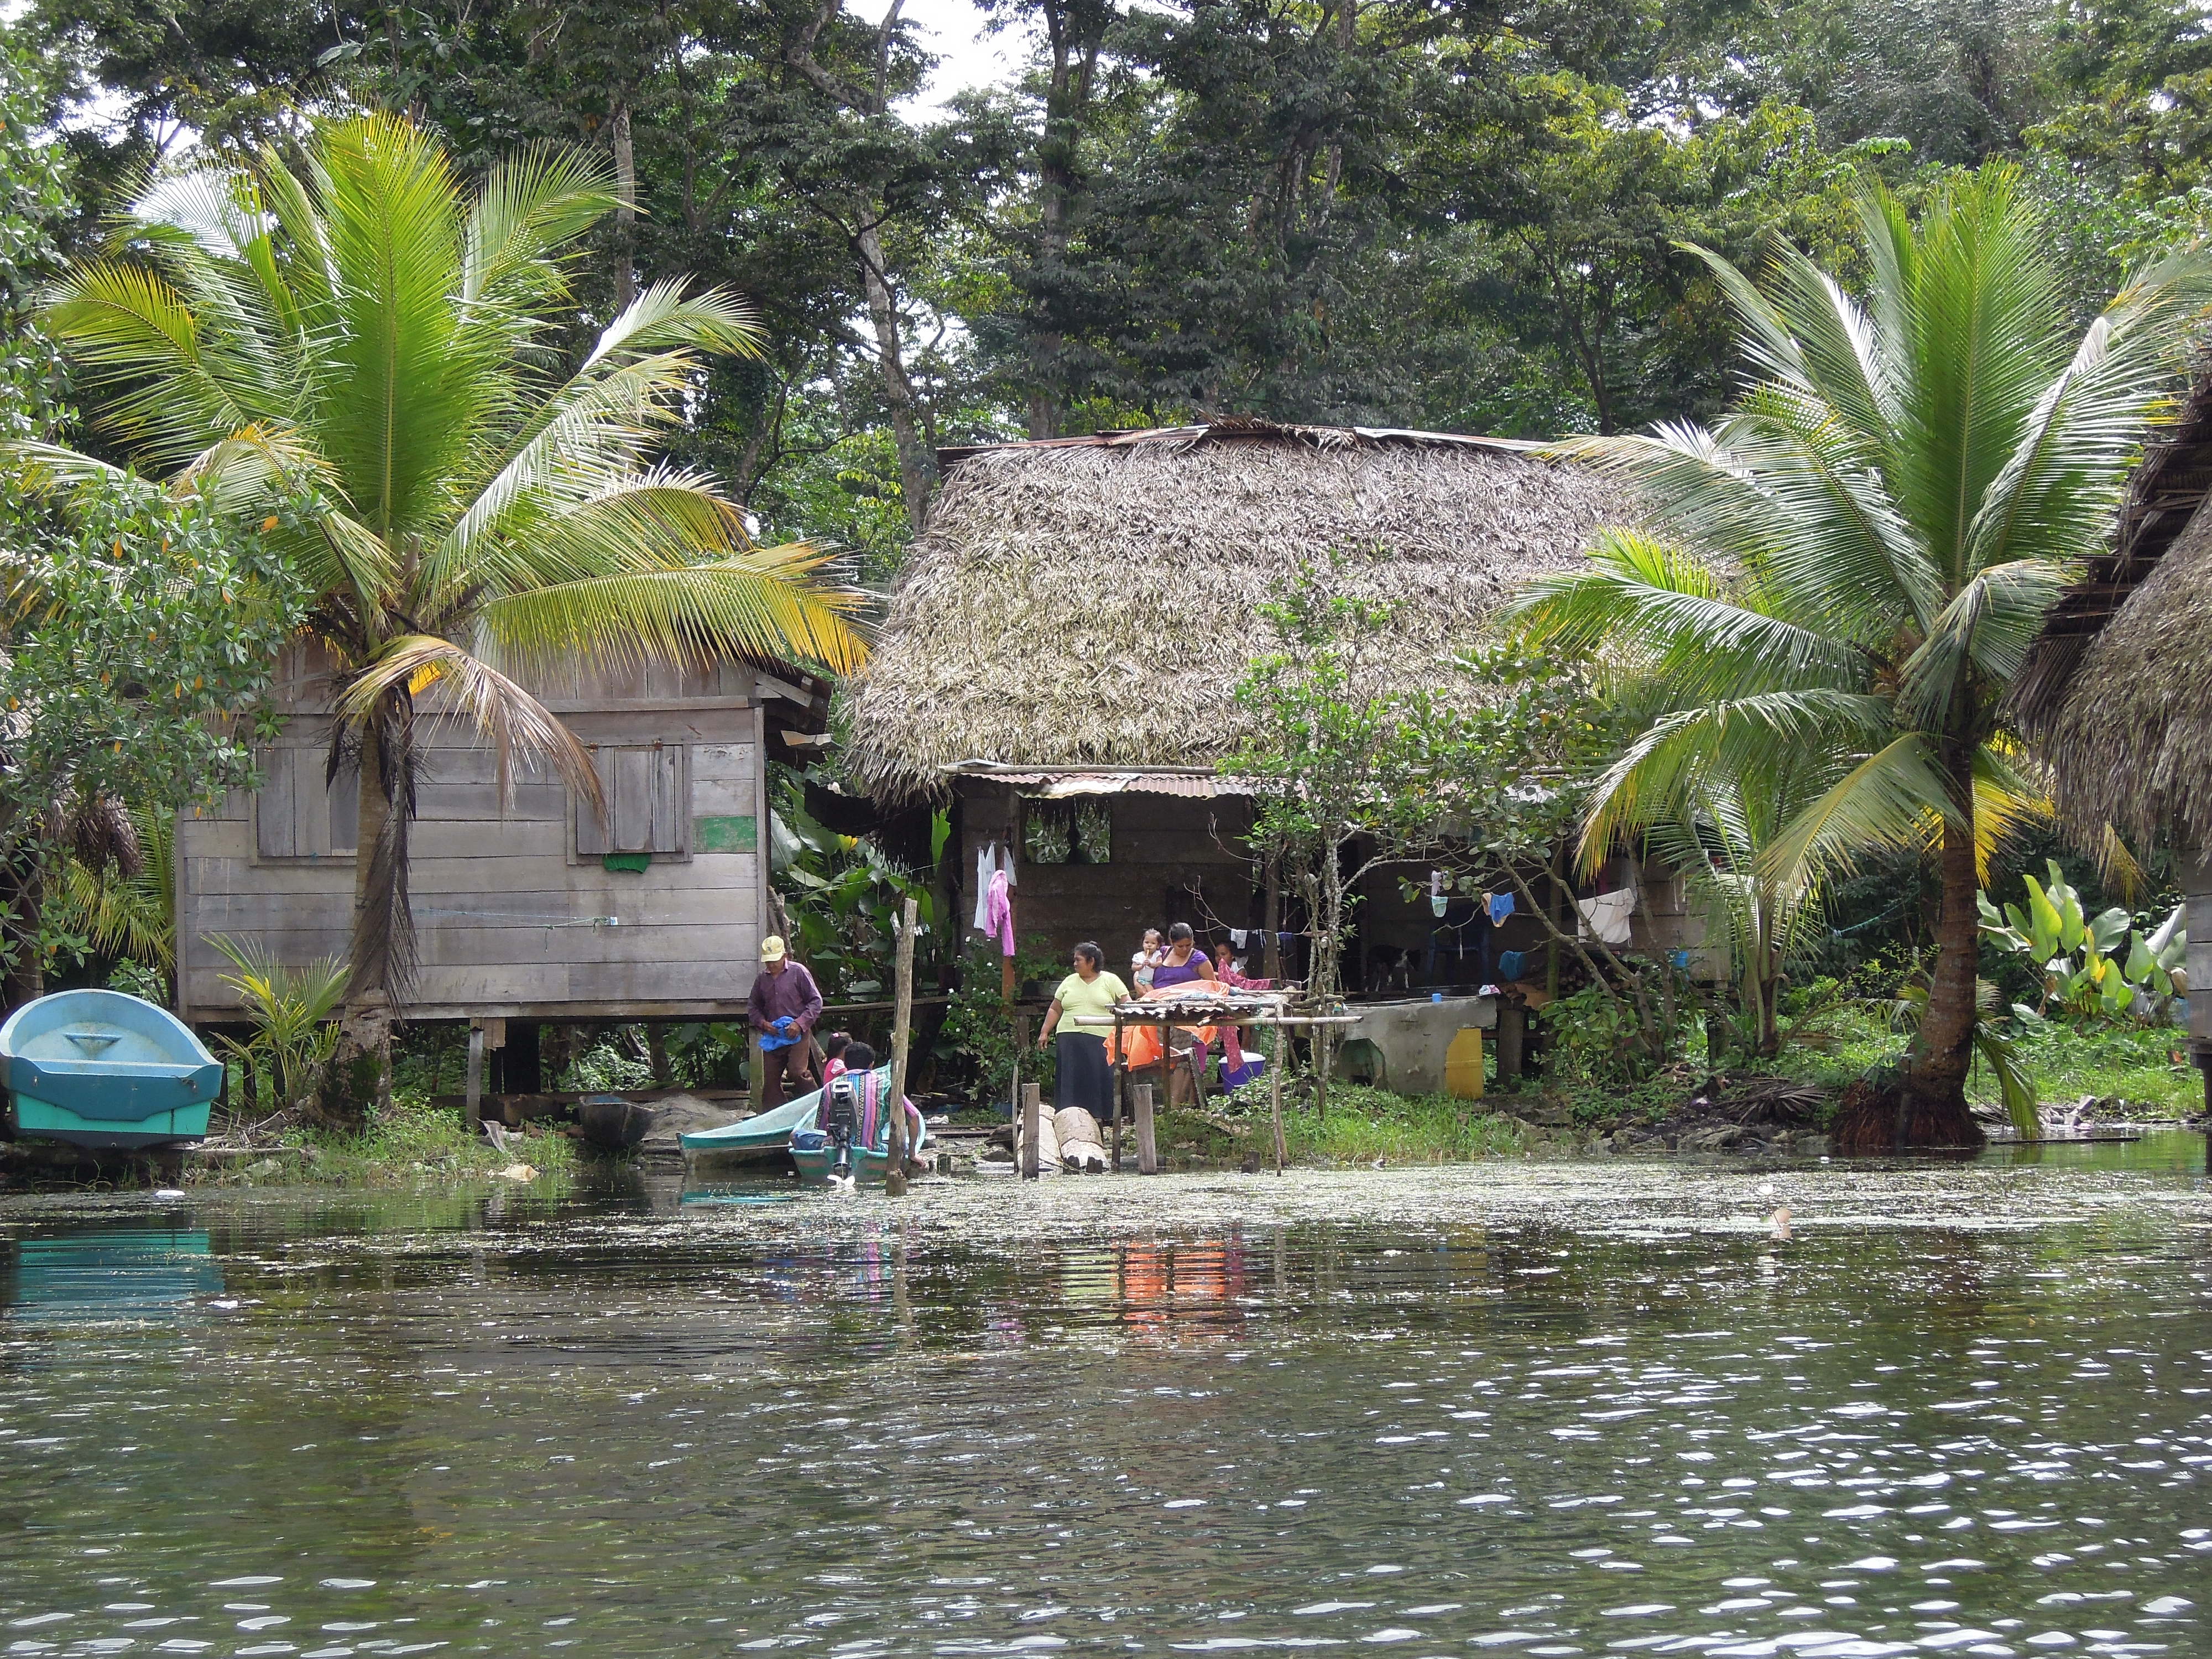 Dom na wodzie, Rio Dulce, Gwatemala, fot. M. Lehrmann